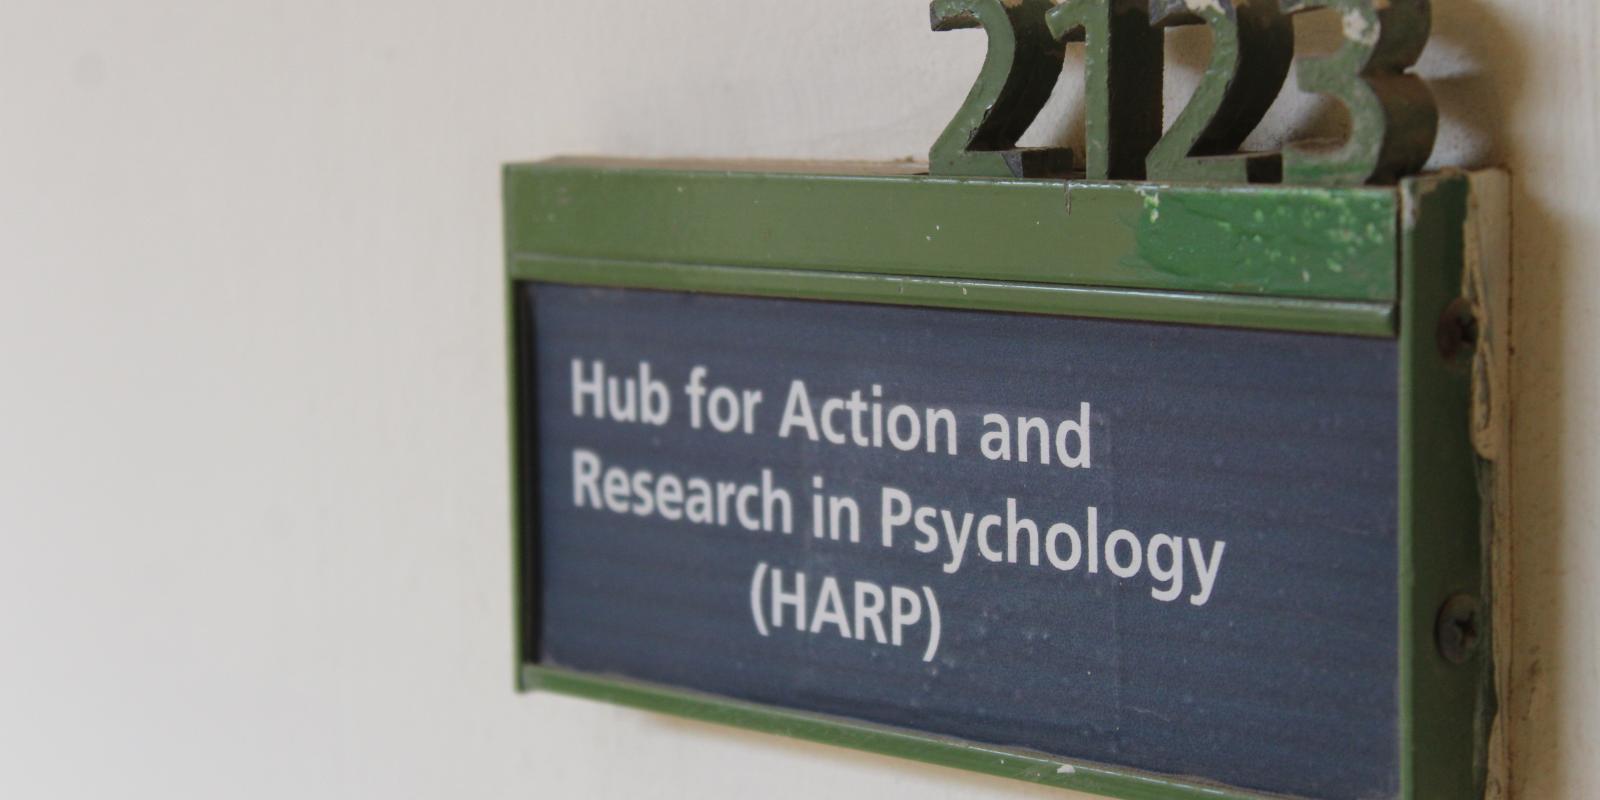 HARP in Psychology Department